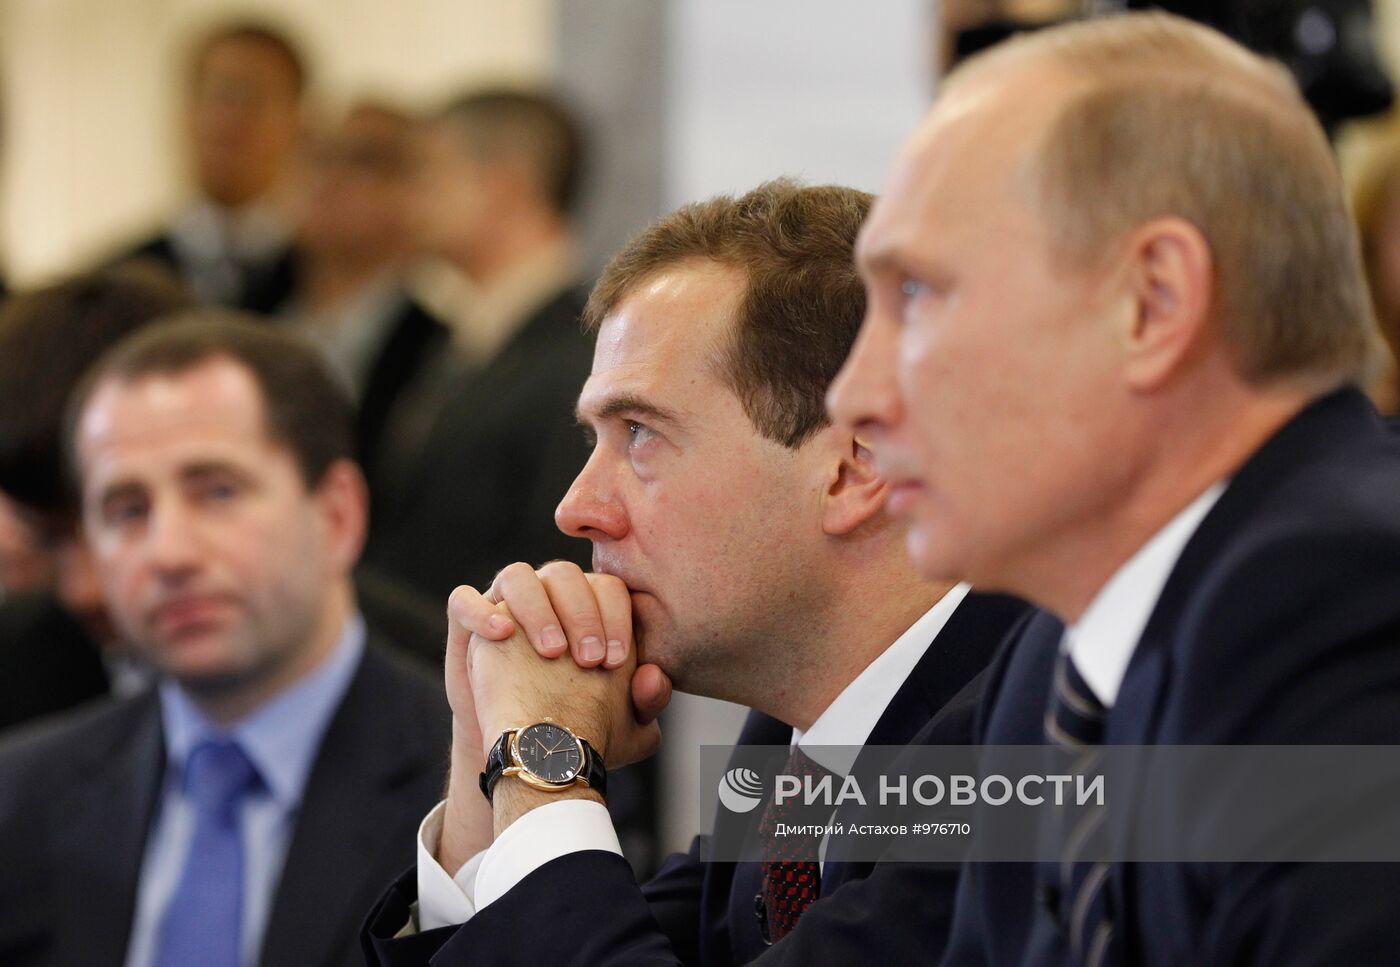 Посещение Д.Медведевым штаба партии "Единая Россия"